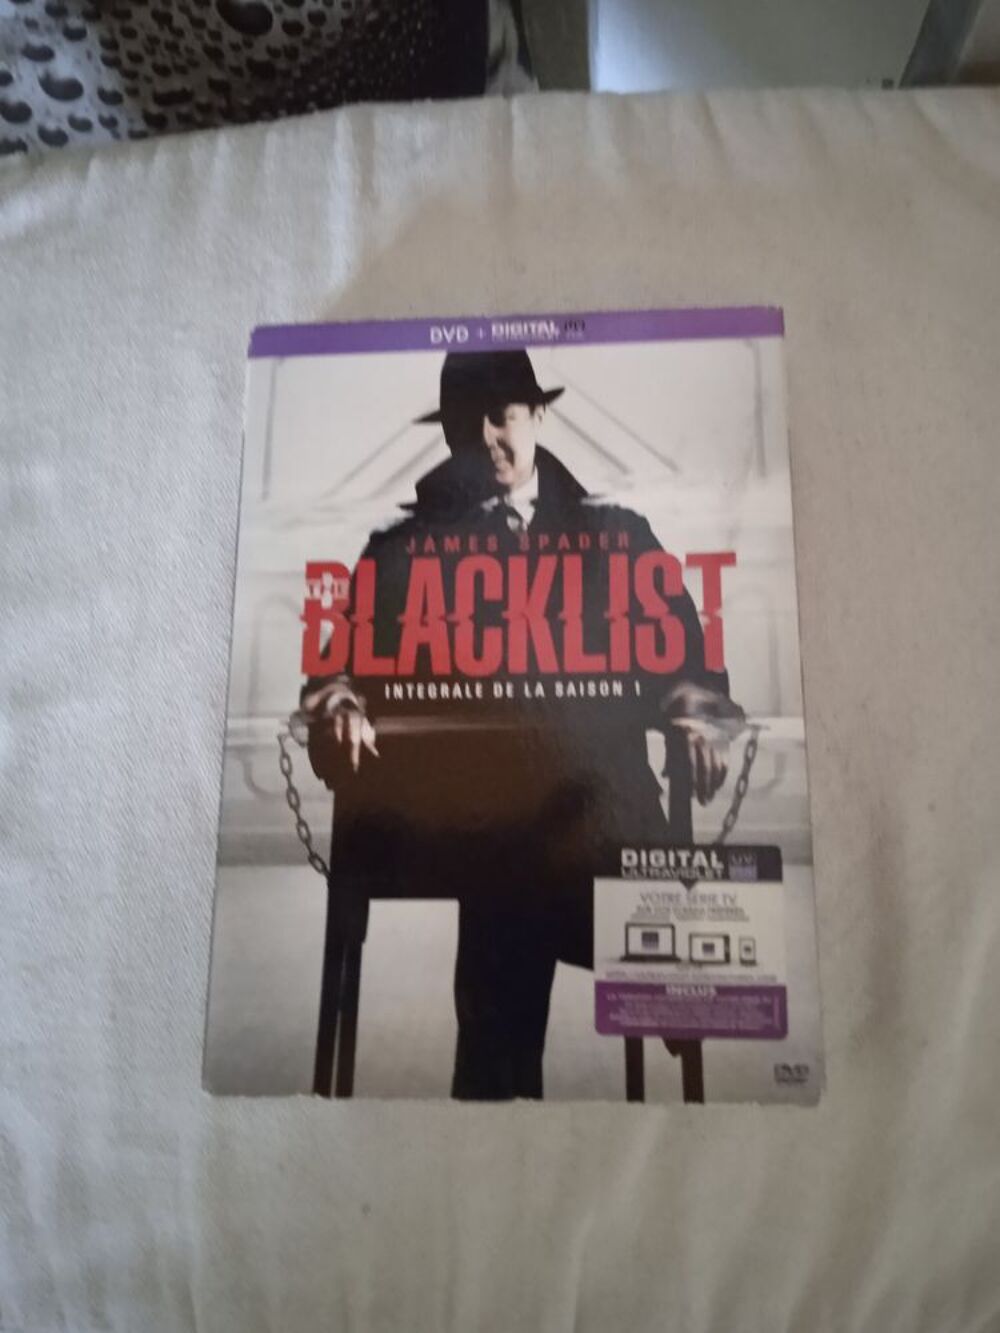 DVD The Blacklist
Saisons 1
2013
6 CD
Excellent &eacute;tat
En DVD et blu-ray